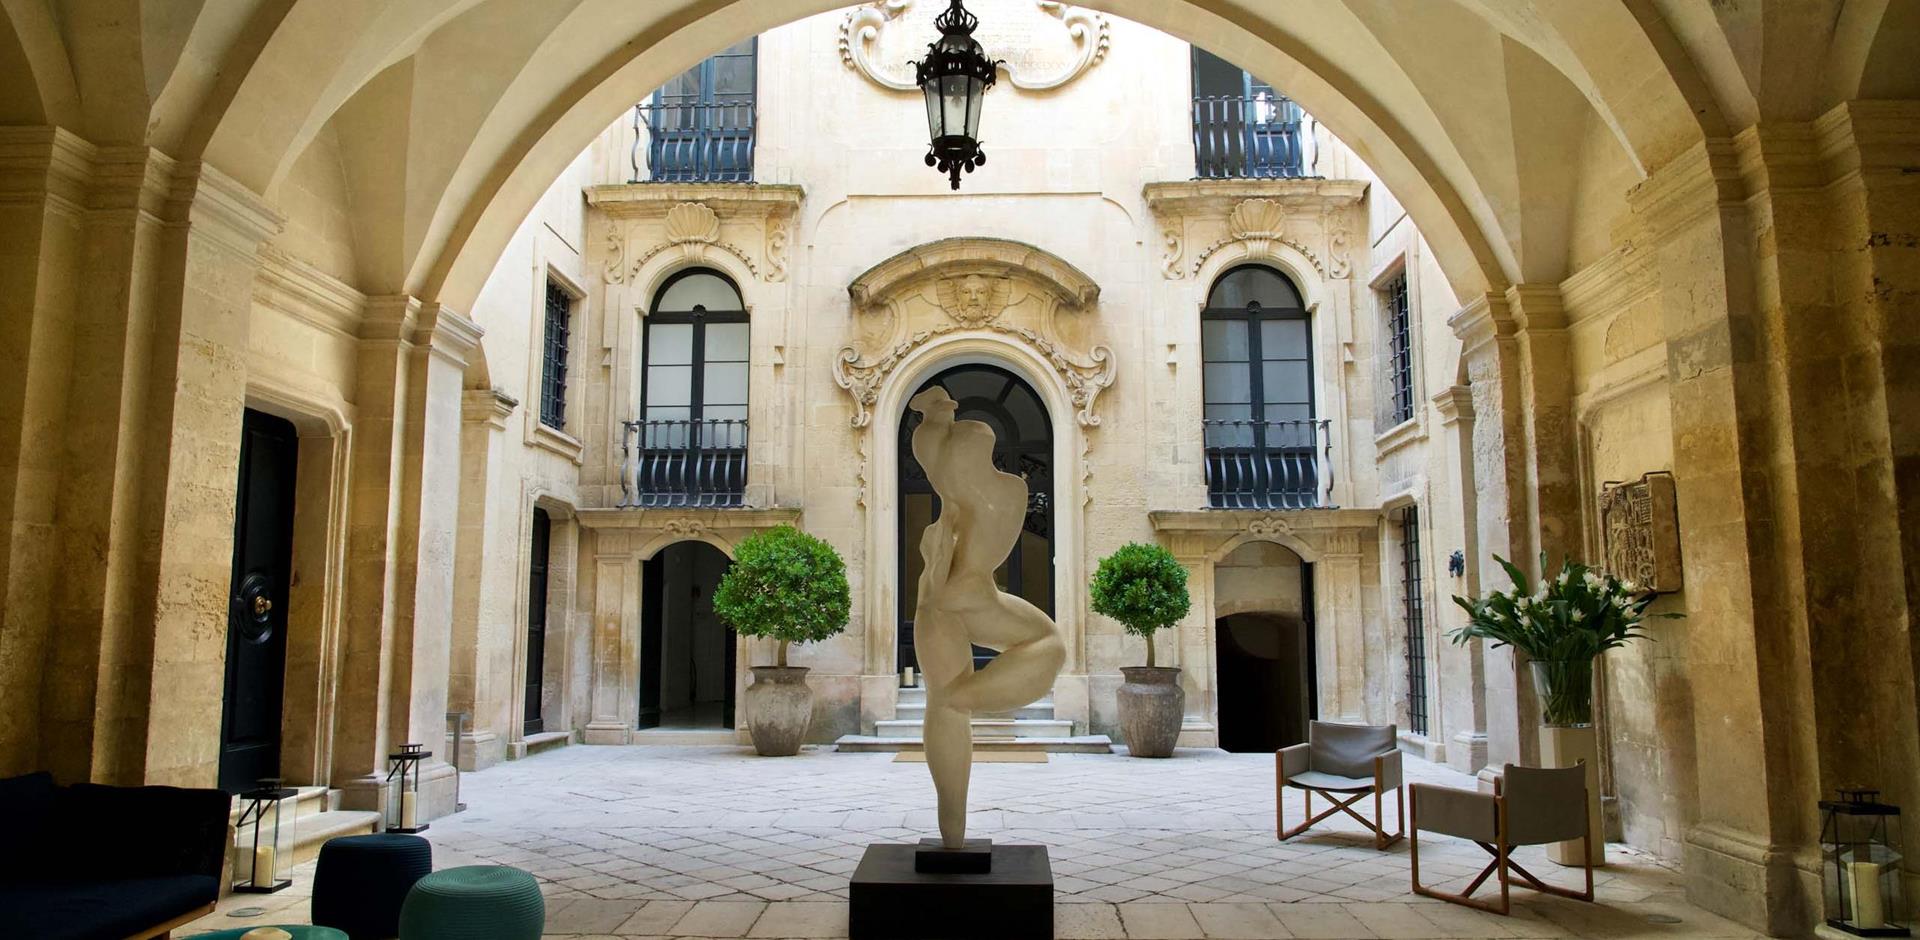 Courtyard, Palazzo Bozzi Corso, Lecce, Italy